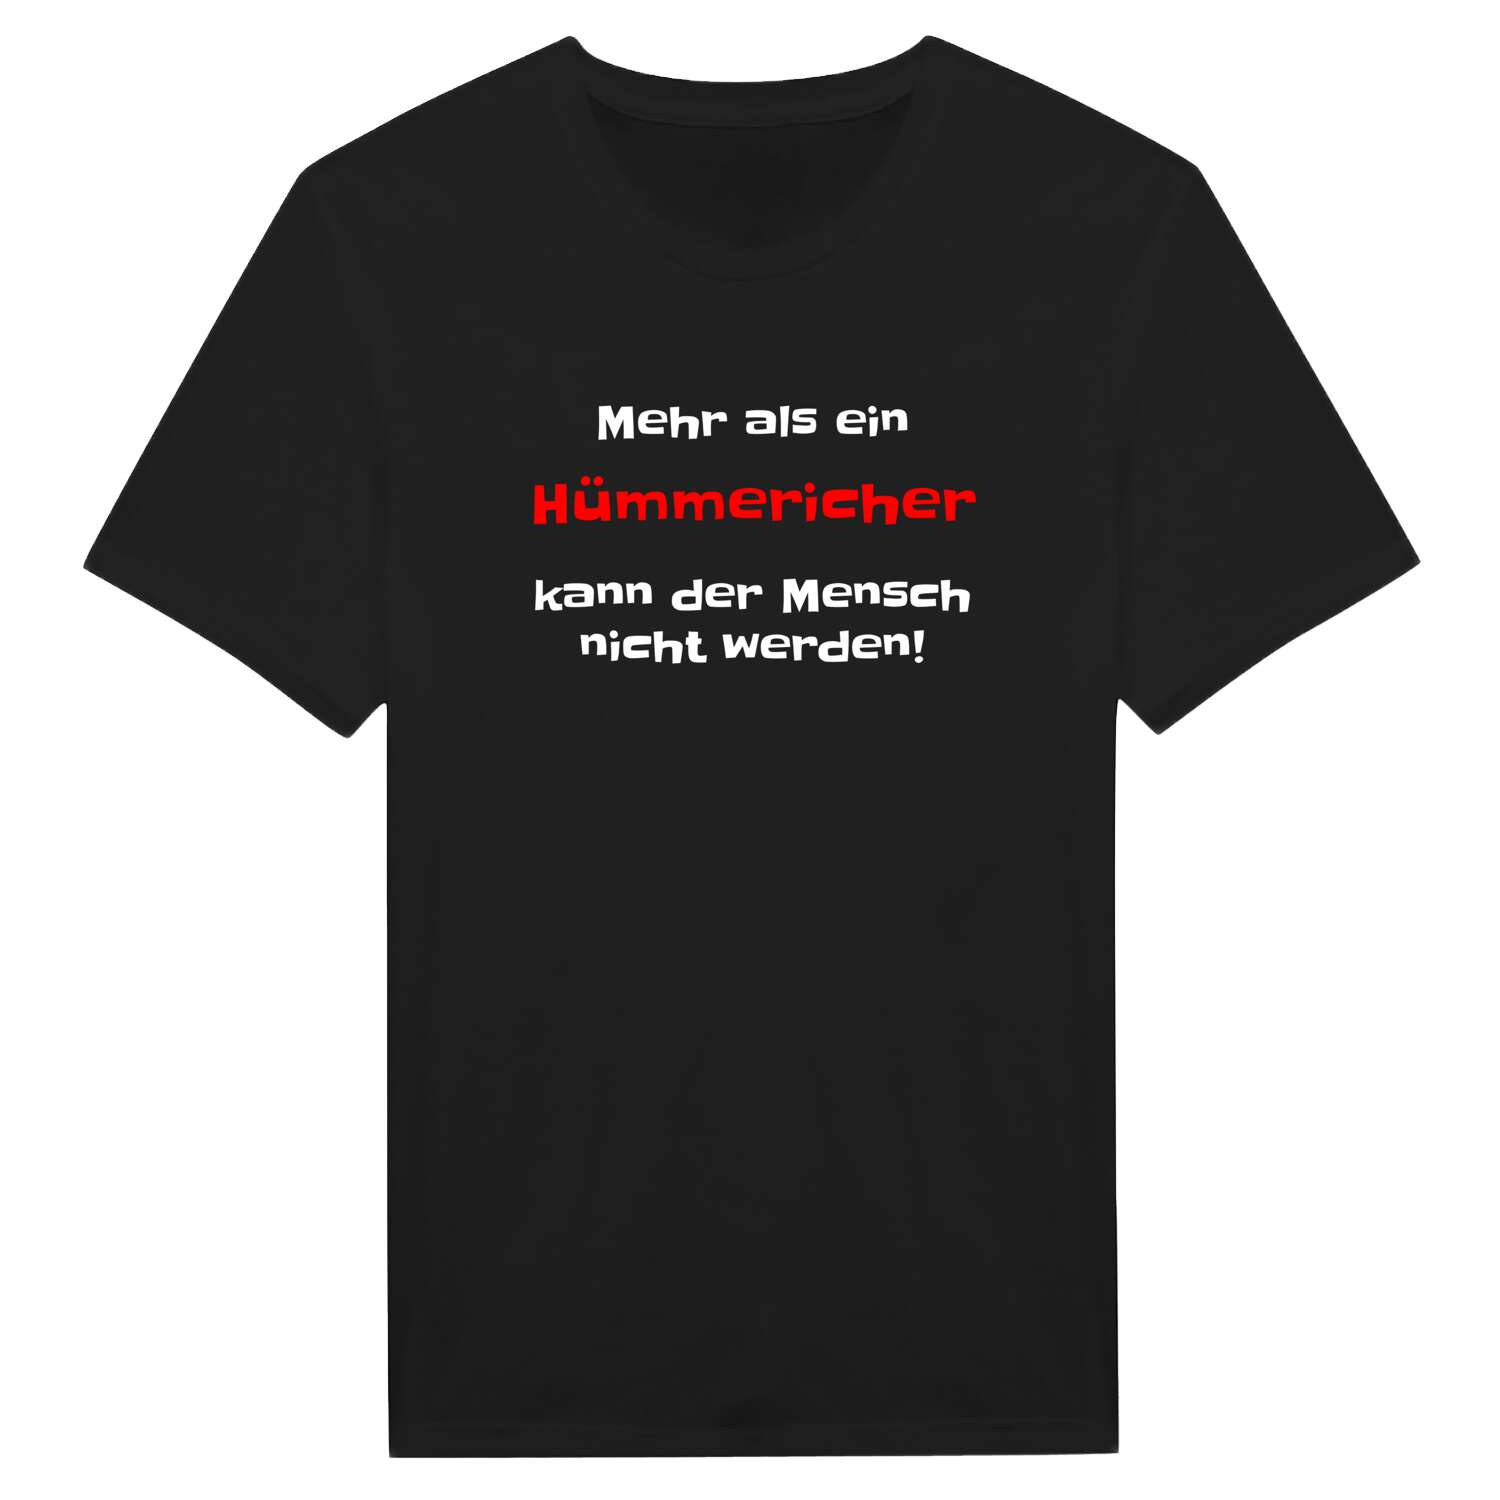 Hümmerich T-Shirt »Mehr als ein«